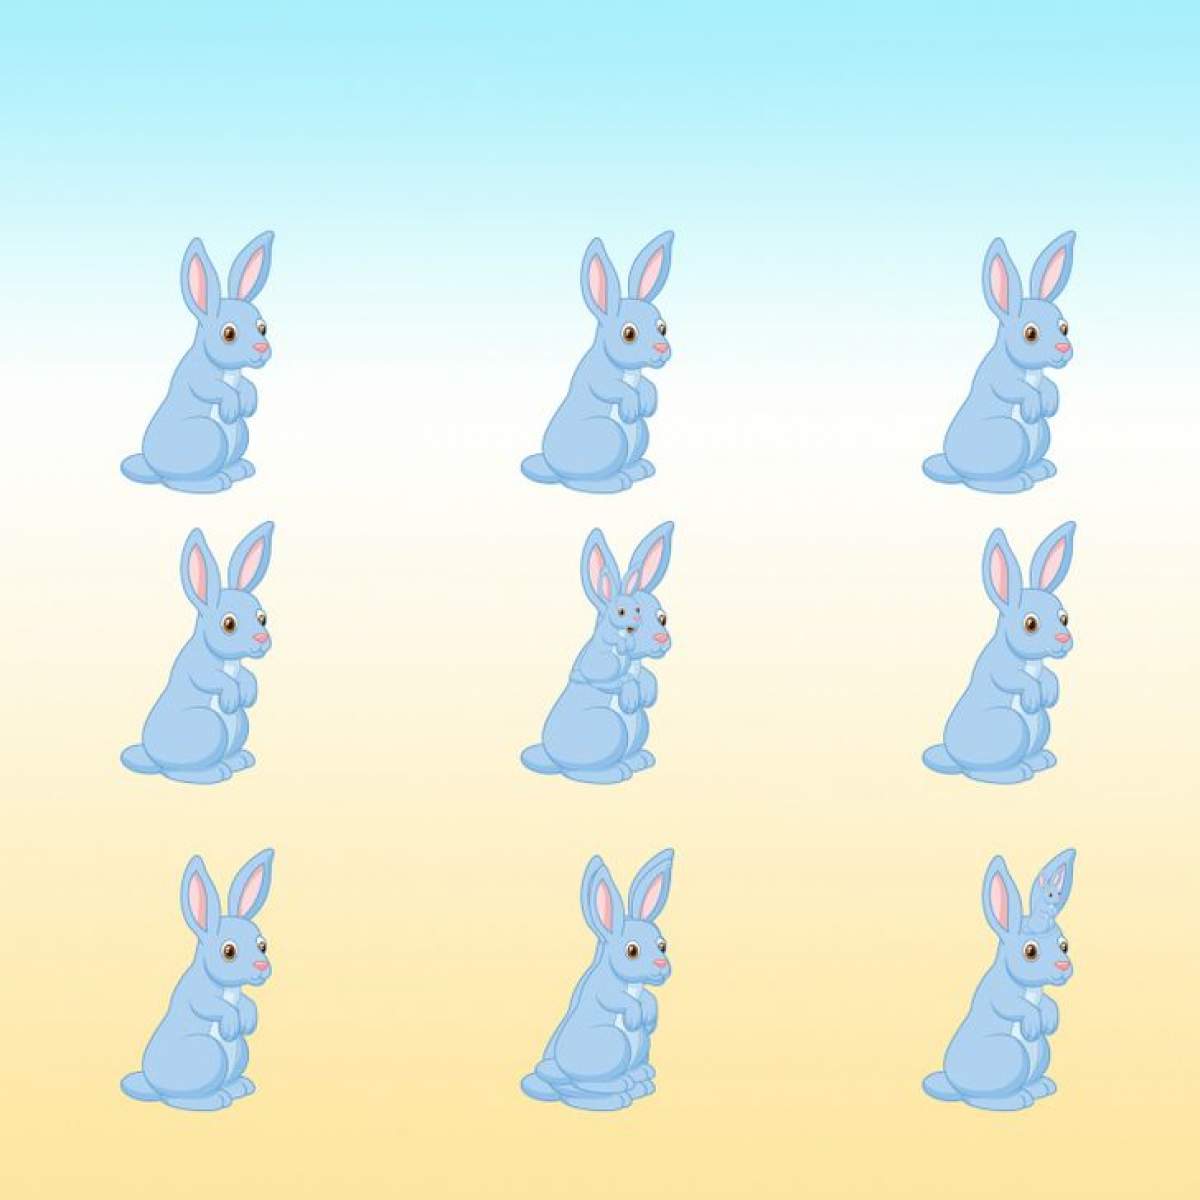 Câți iepuri sunt în imagine?